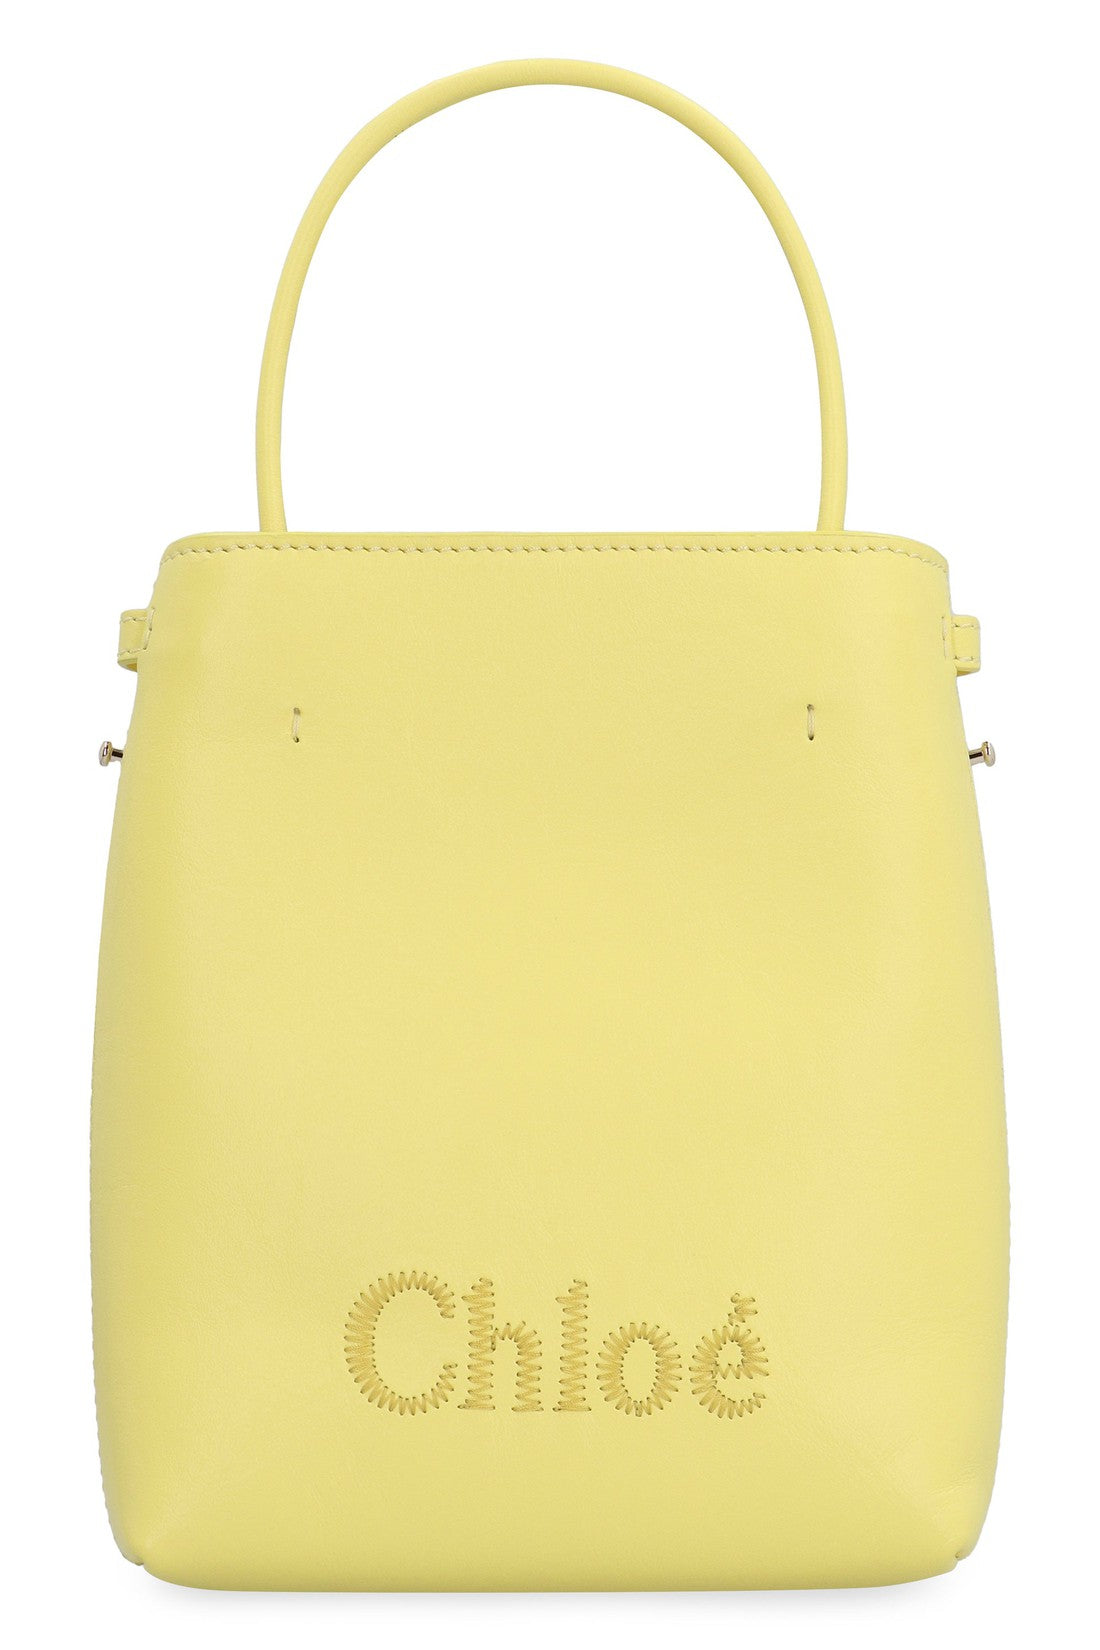 Chloé-OUTLET-SALE-Sense Leather bucket bag-ARCHIVIST